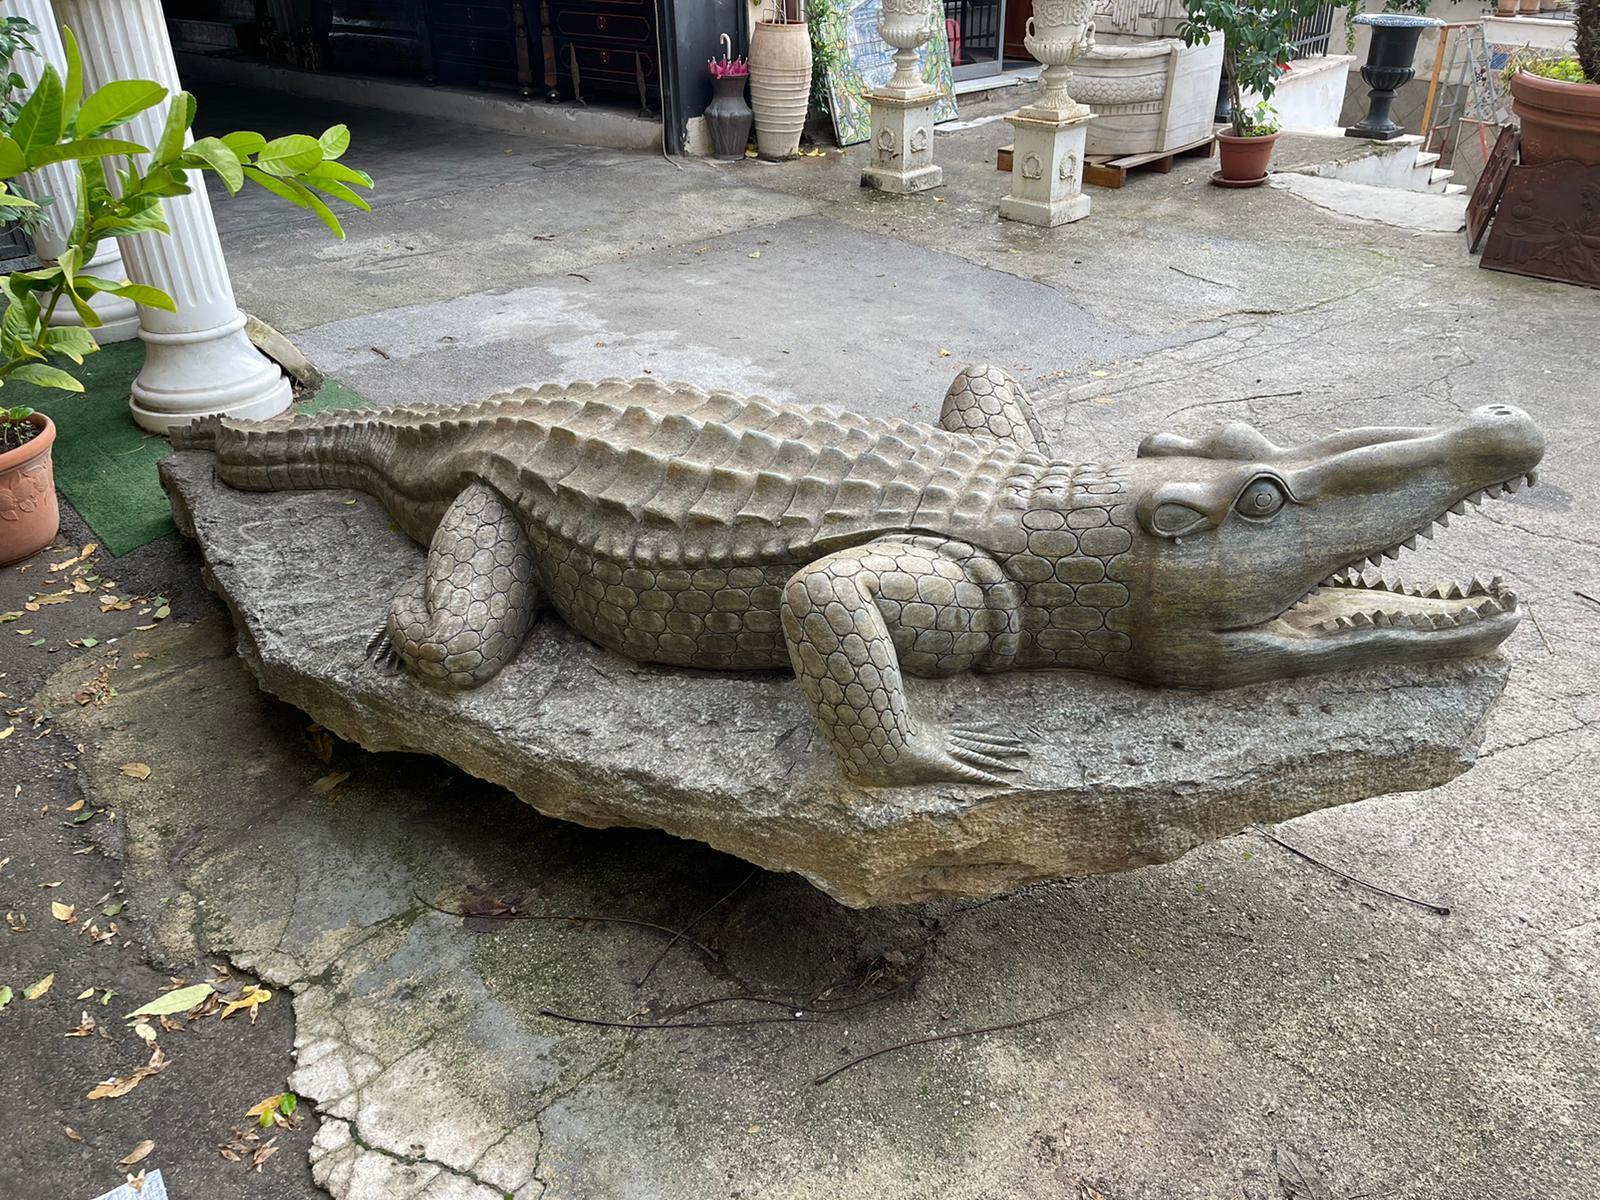 Grande sculpture en marbre vert, représentant un crocodile.

Il se trouvait dans une villa en Toscane, Italie, il est présenté sans défauts sauf les signes du temps.

La sculpture, finement réalisée à la main, jusque dans les moindres détails, a